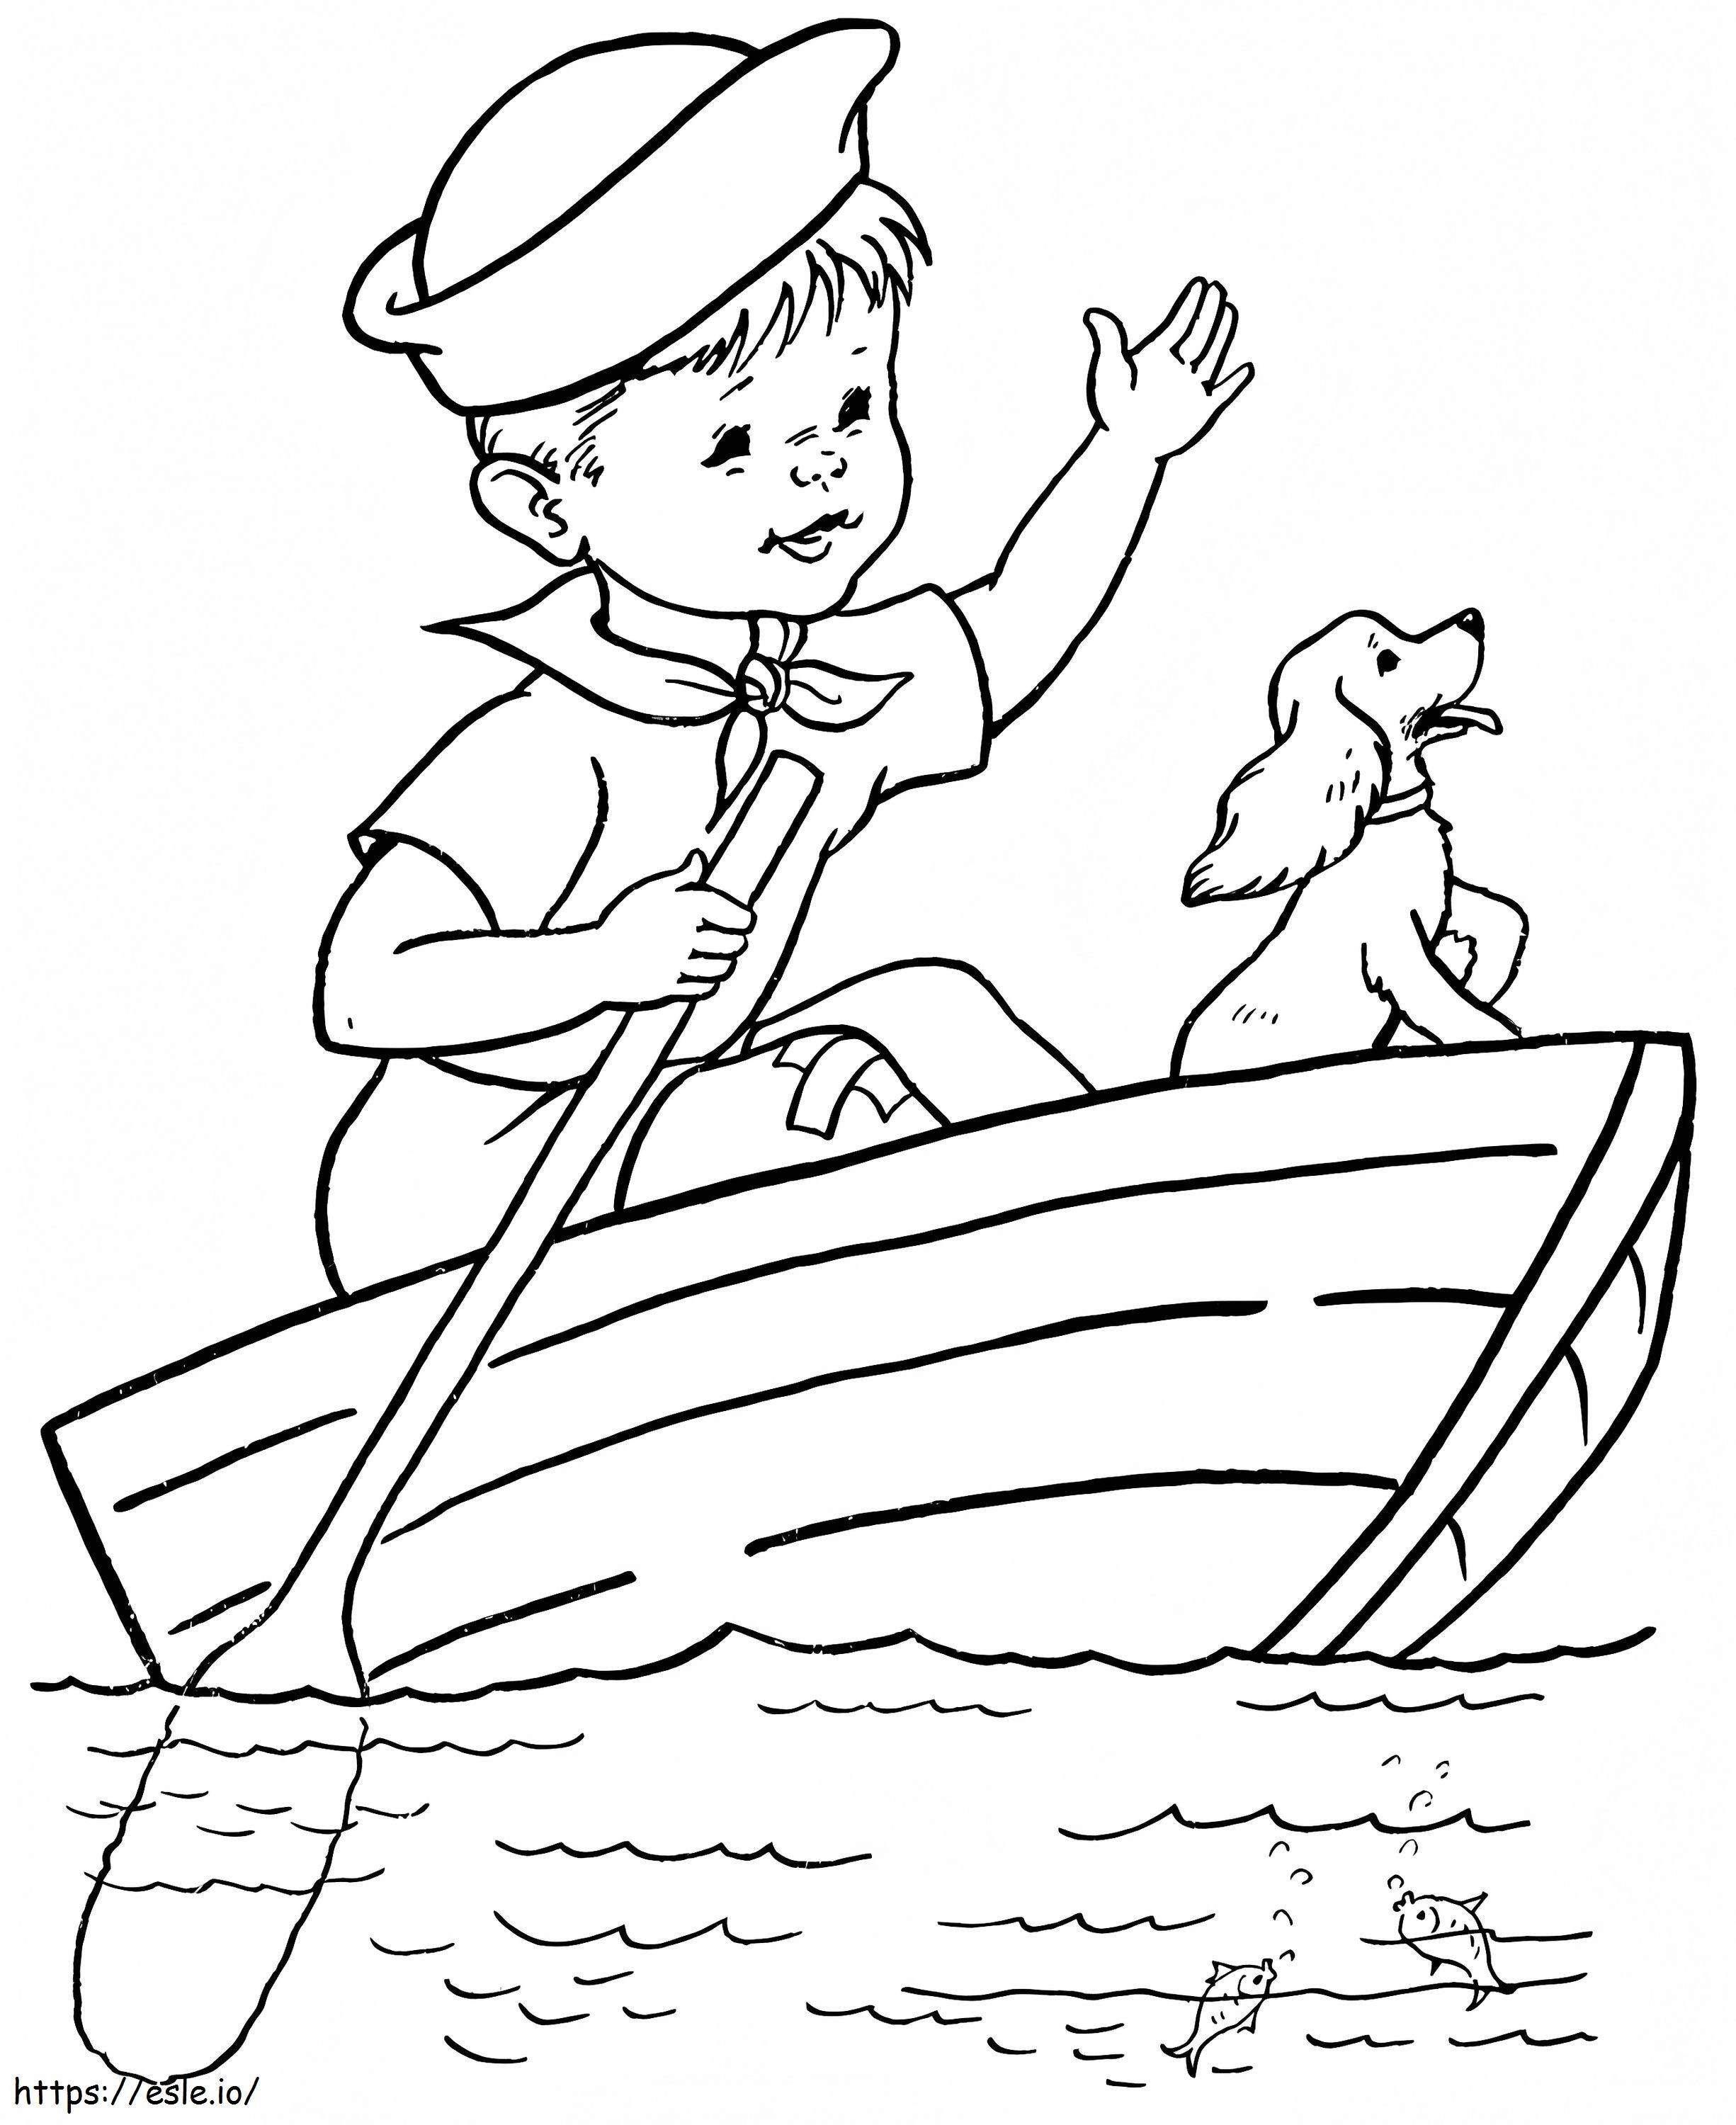  Poikakoira soutuveneessä A4 värityskuva